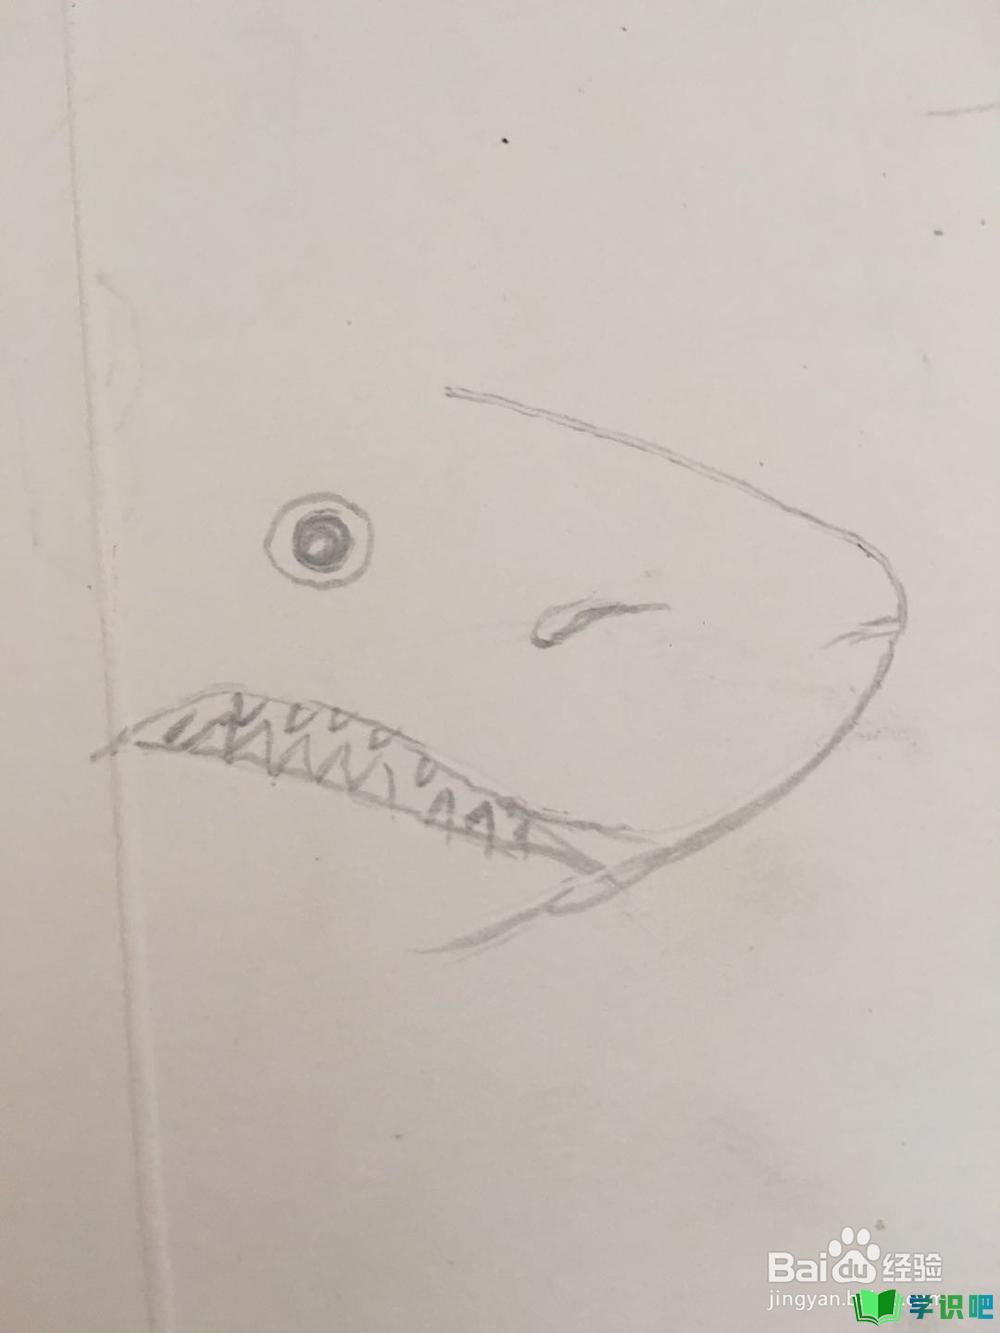 鲨鱼的简笔画怎么画？ 第3张